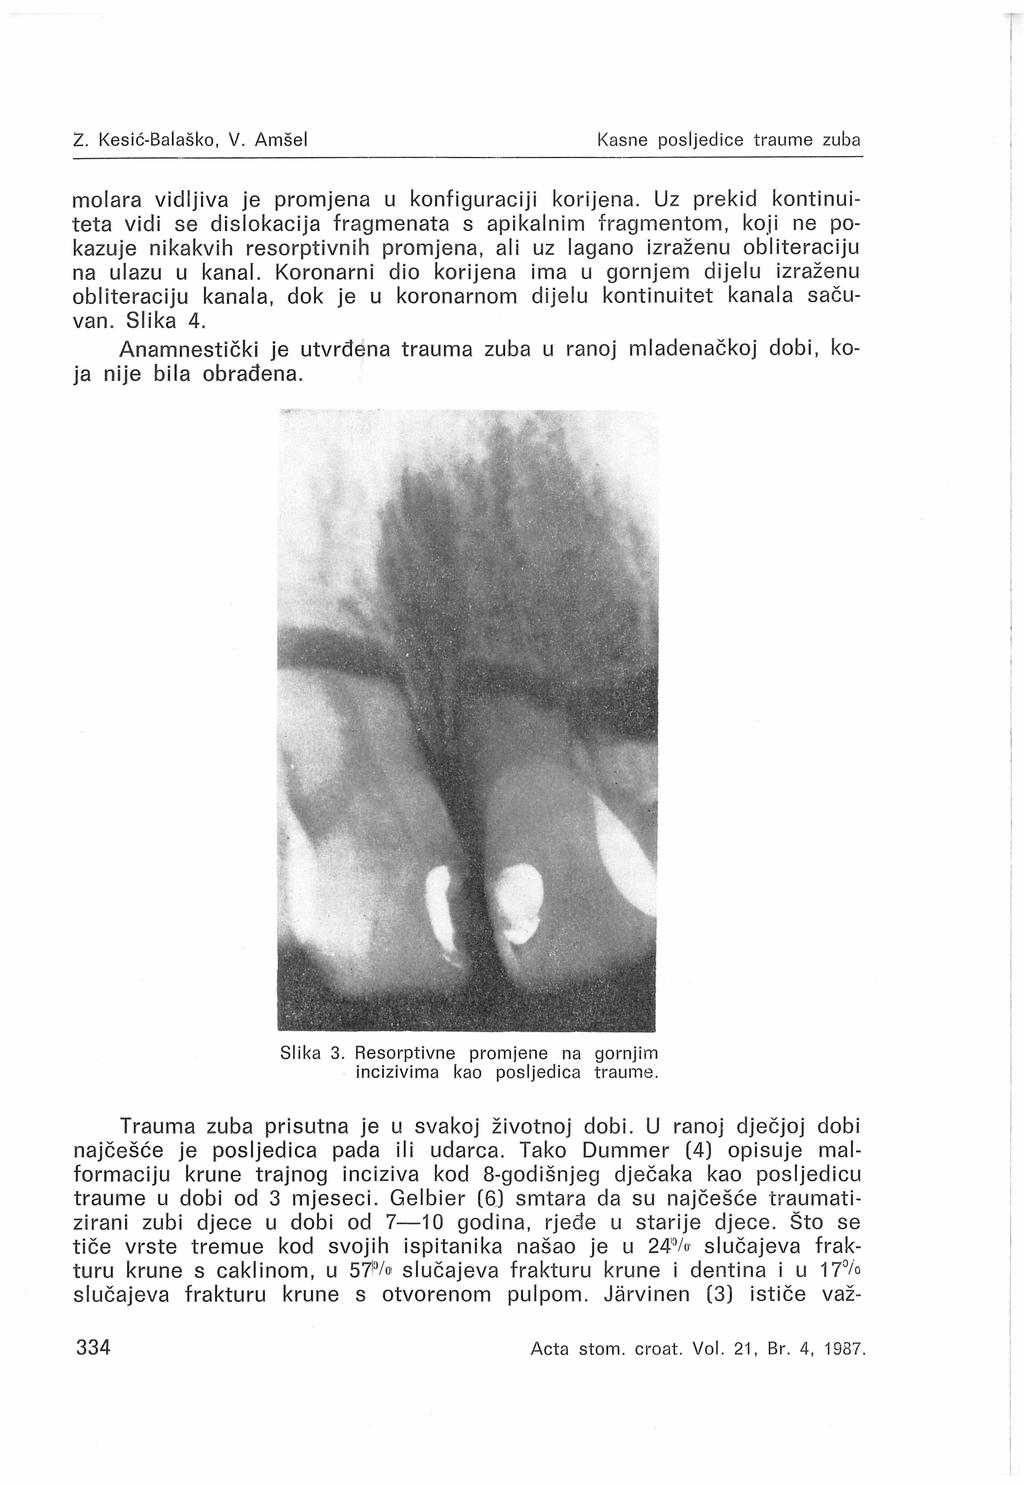 2. Kesić-Baiaško, V. Amšel Kasne posljedice traume zuba molara vidljiva je promjena u konfiguraciji korijena.